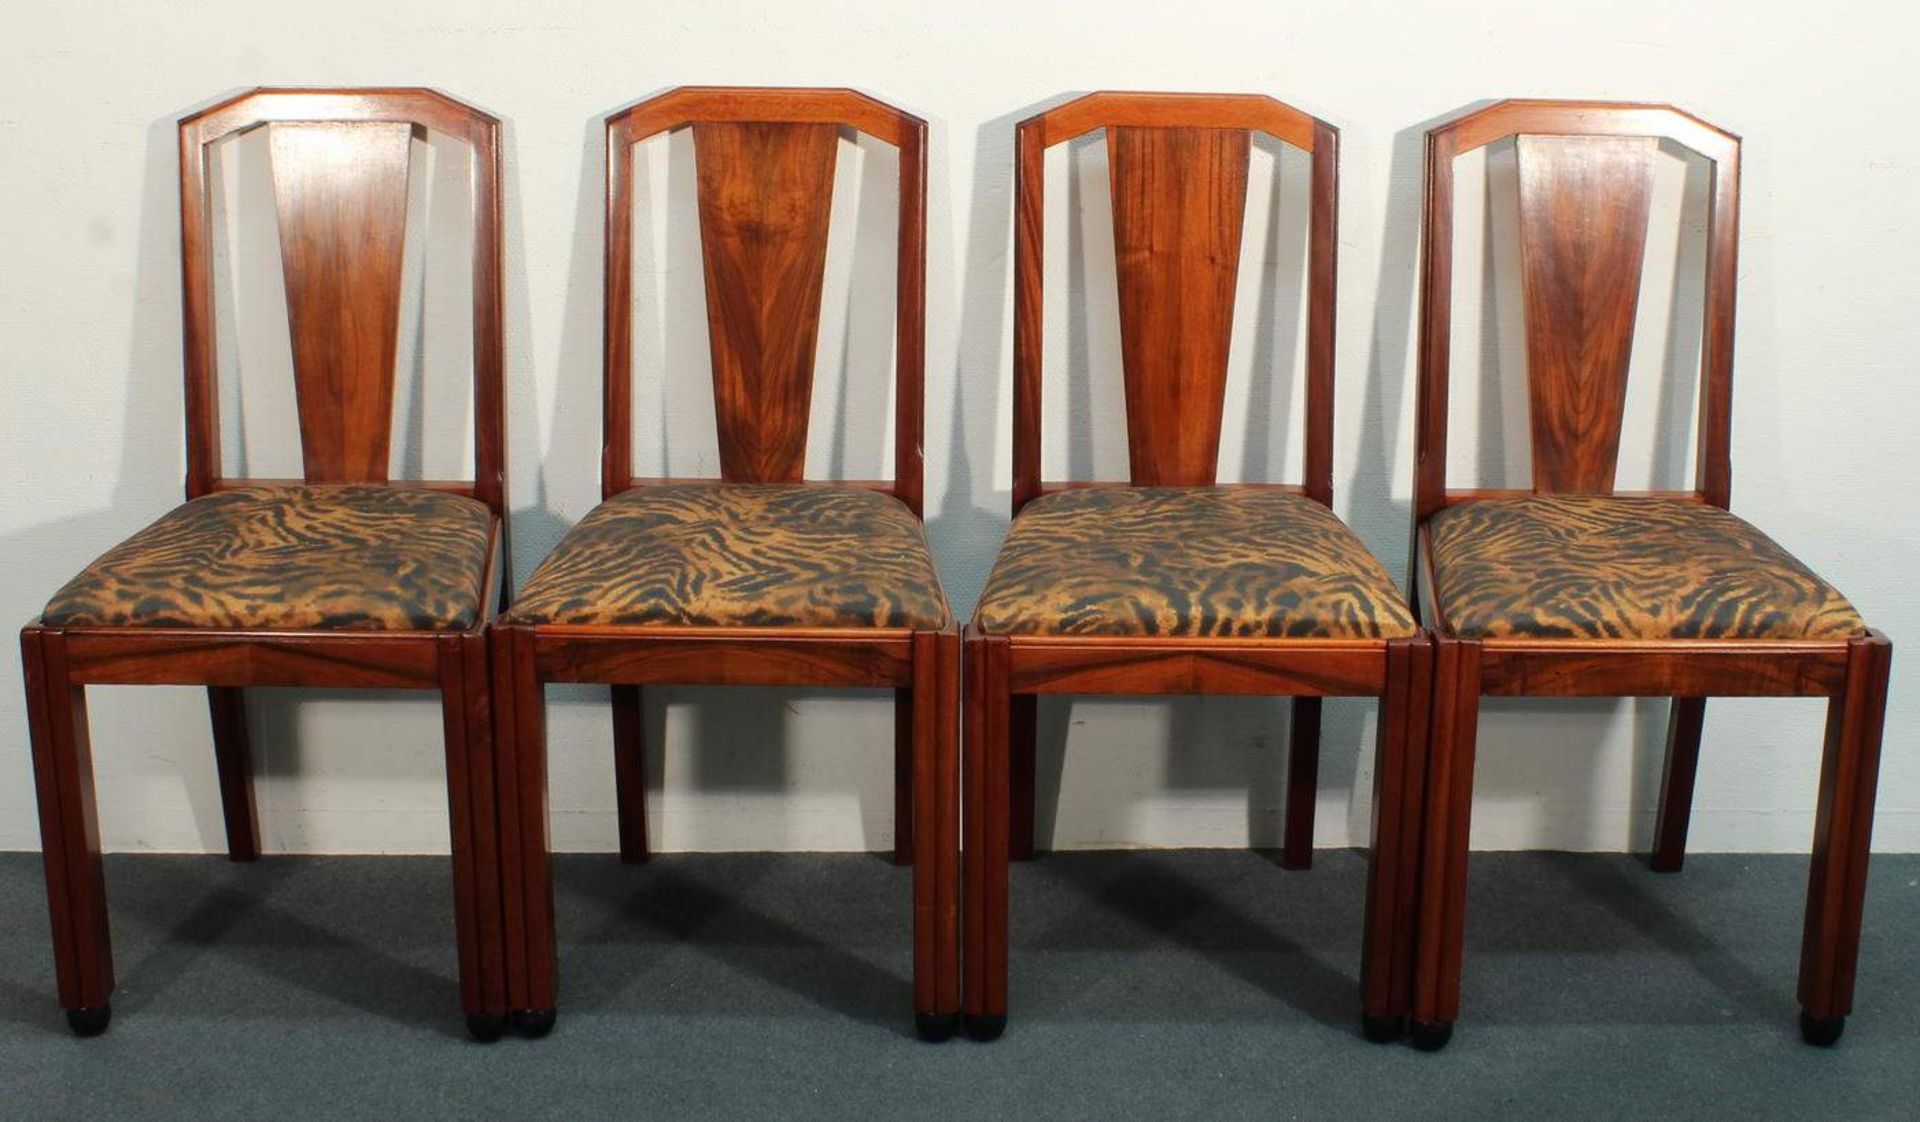 4 Stühle, Art Deco, um 1920/30, Nussbaum, lose Sitzpolster, restauriert